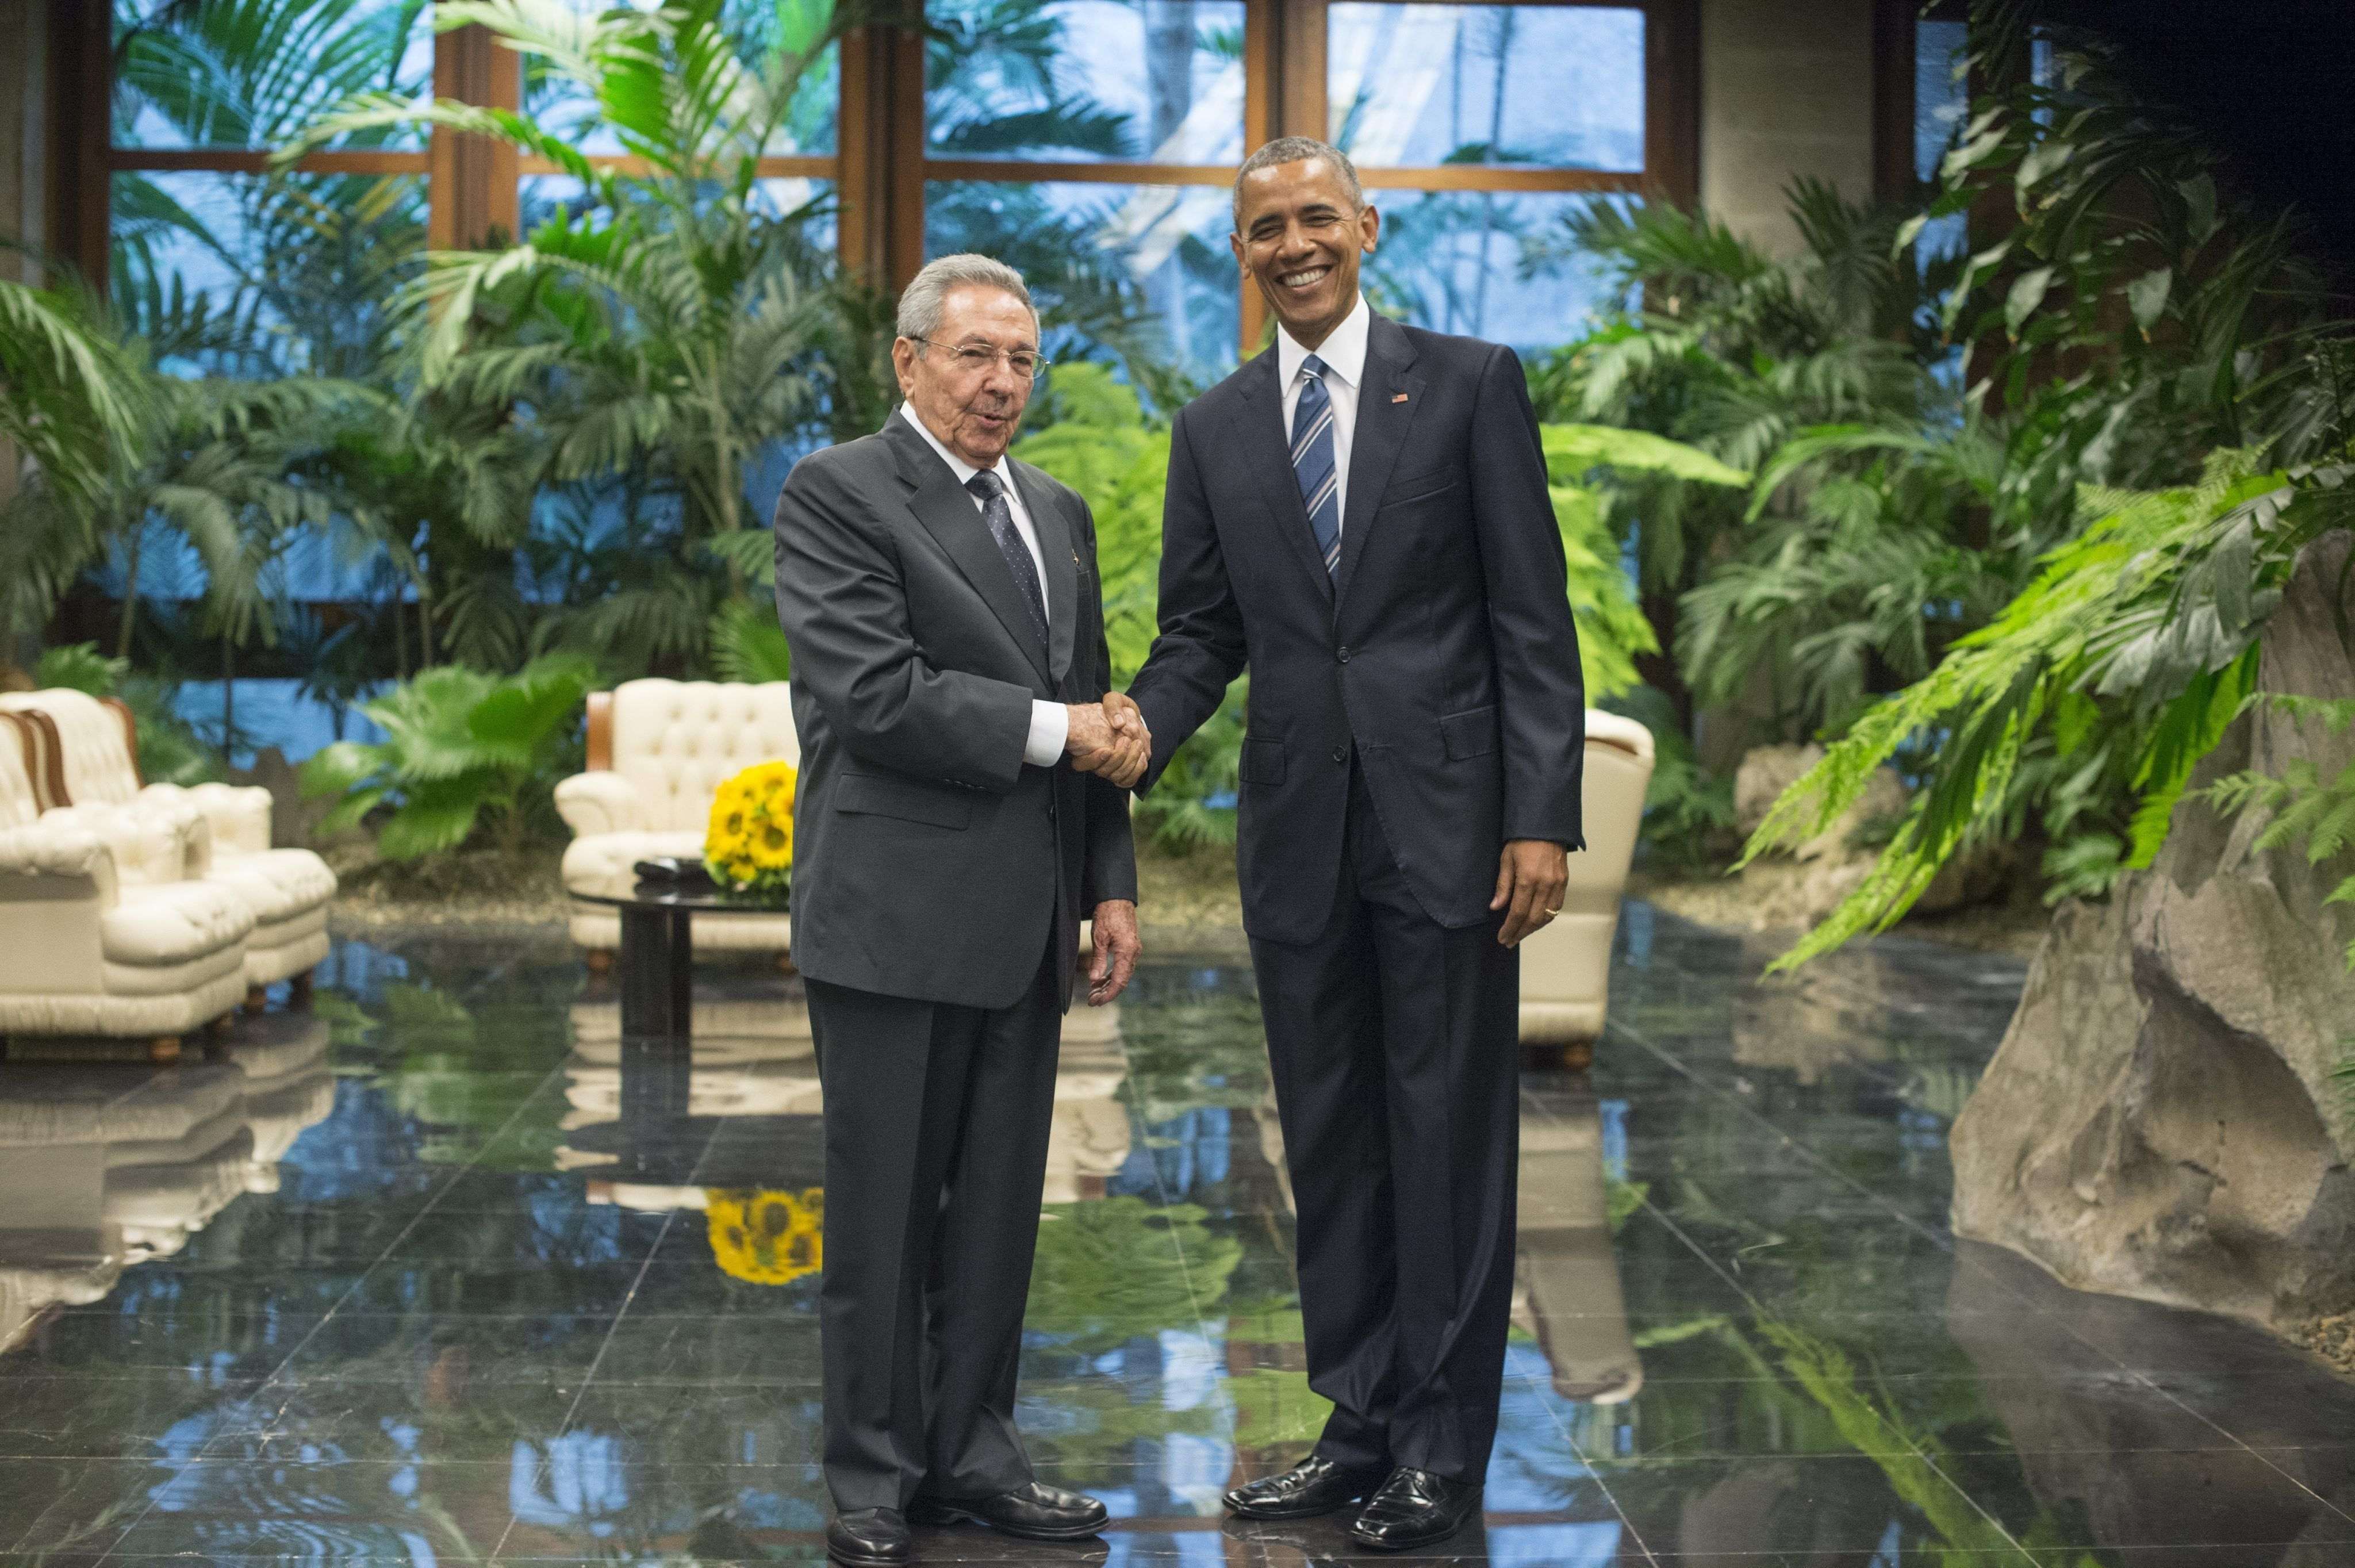 Acaba la visita de Obama a Cuba con mensajes a favor de la democracia